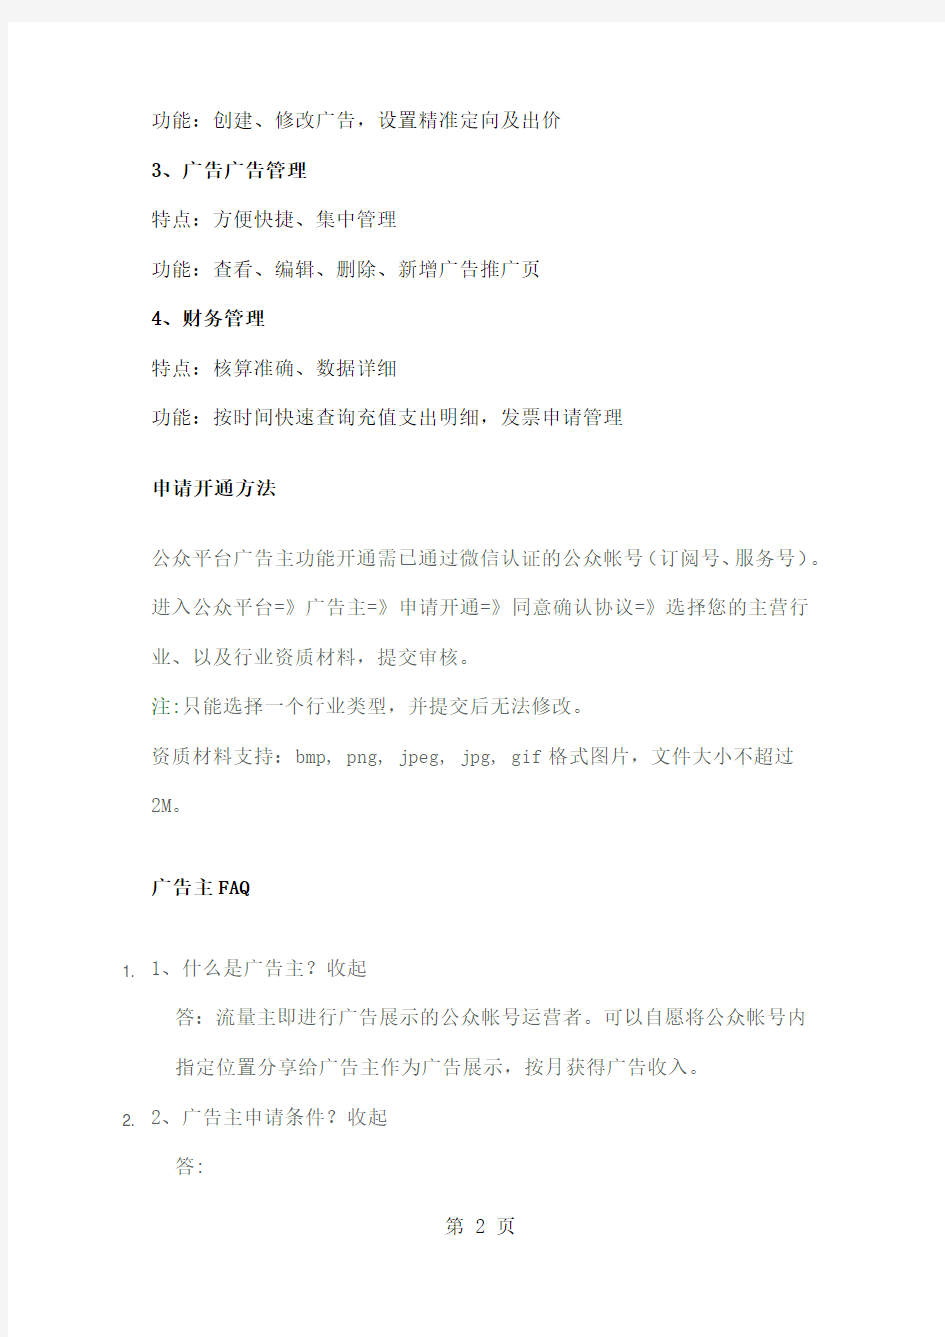 微信公众平台推广功能-16页文档资料